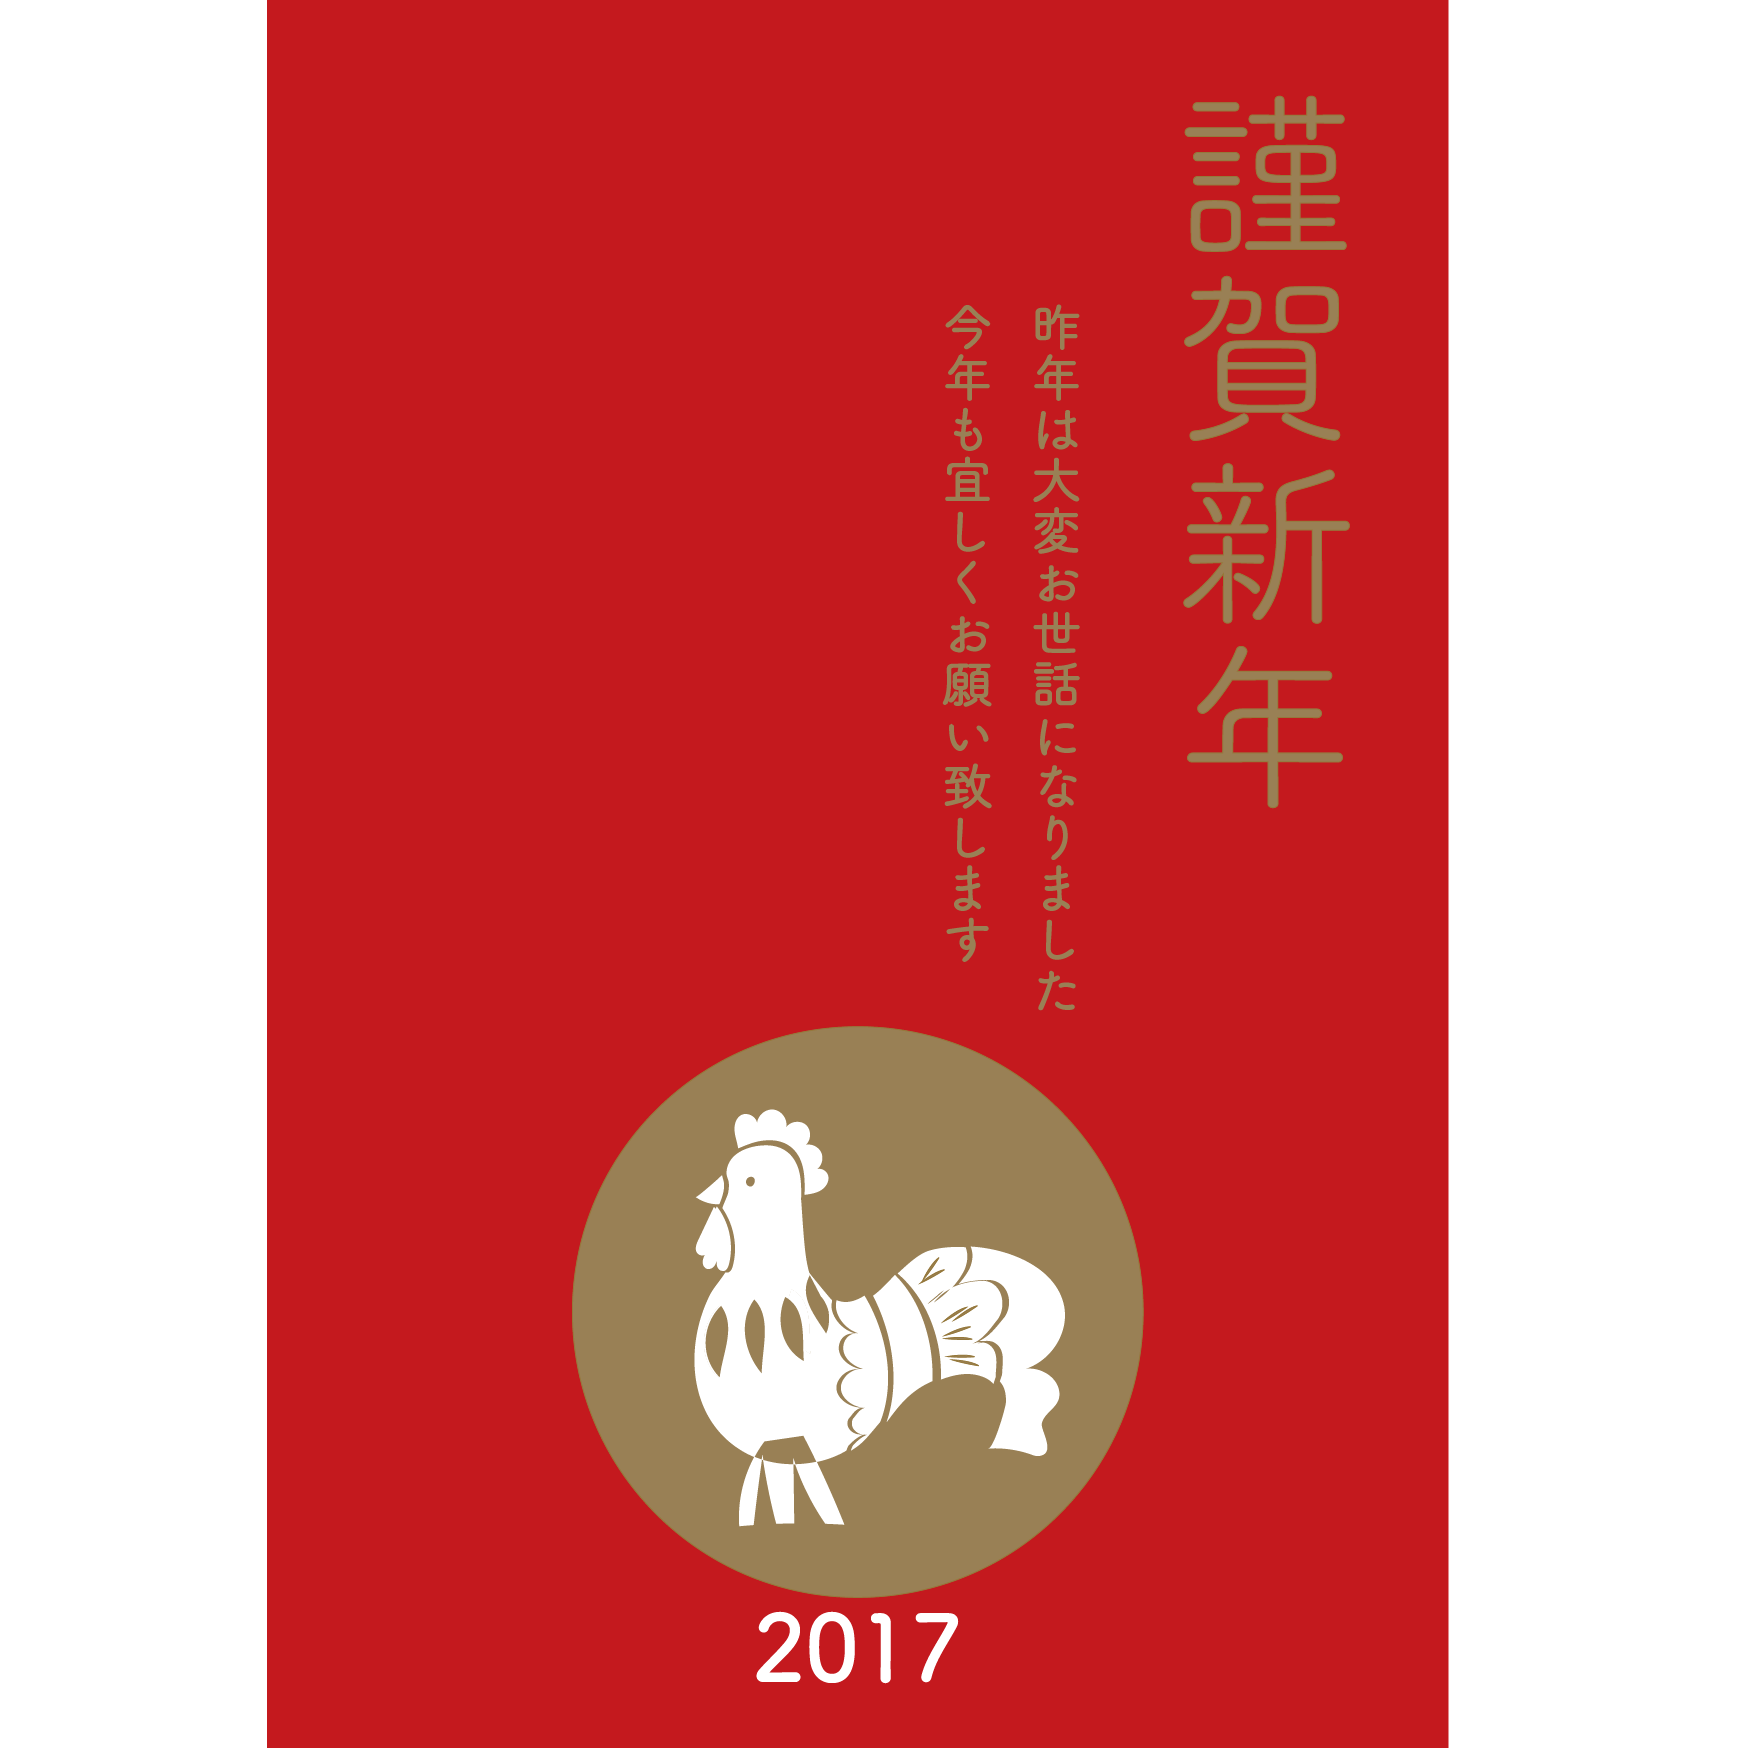 謹賀新年 赤と金の鶏の17年 年賀状イラスト 縦バージョン 商用フリー 無料 のイラスト素材なら イラストマンション